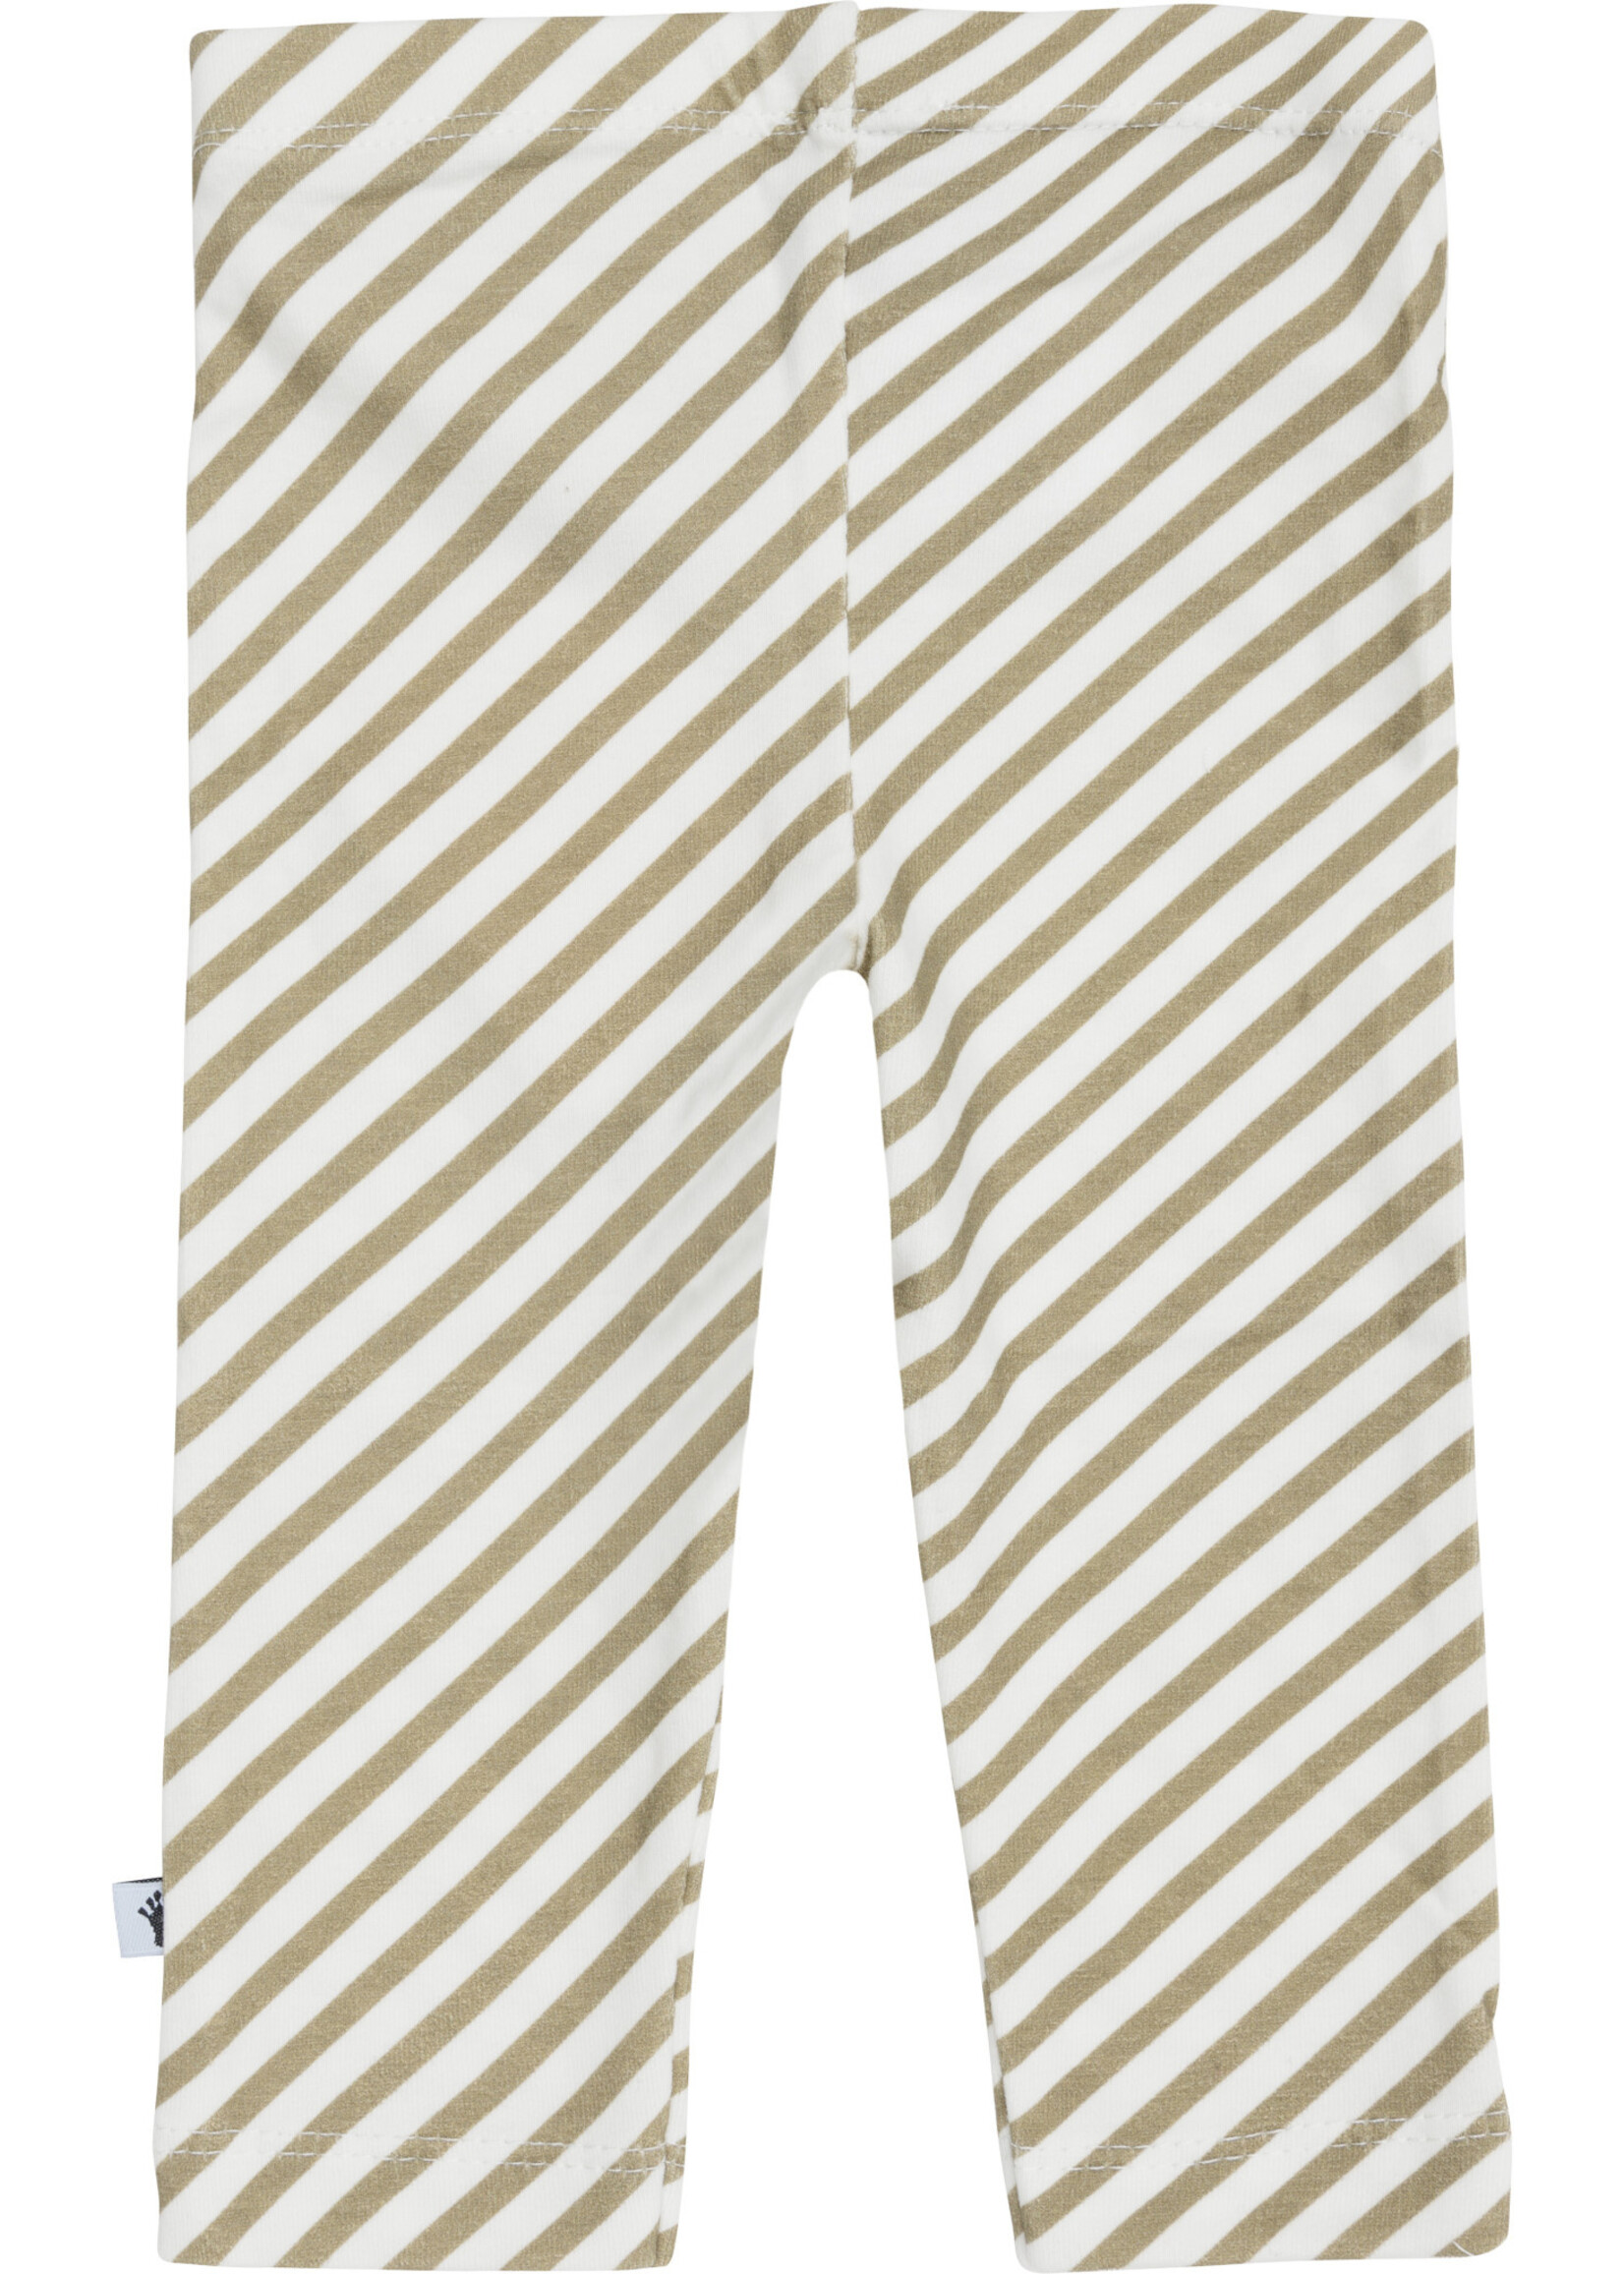 Klein Klein - legging stripe off white / twill